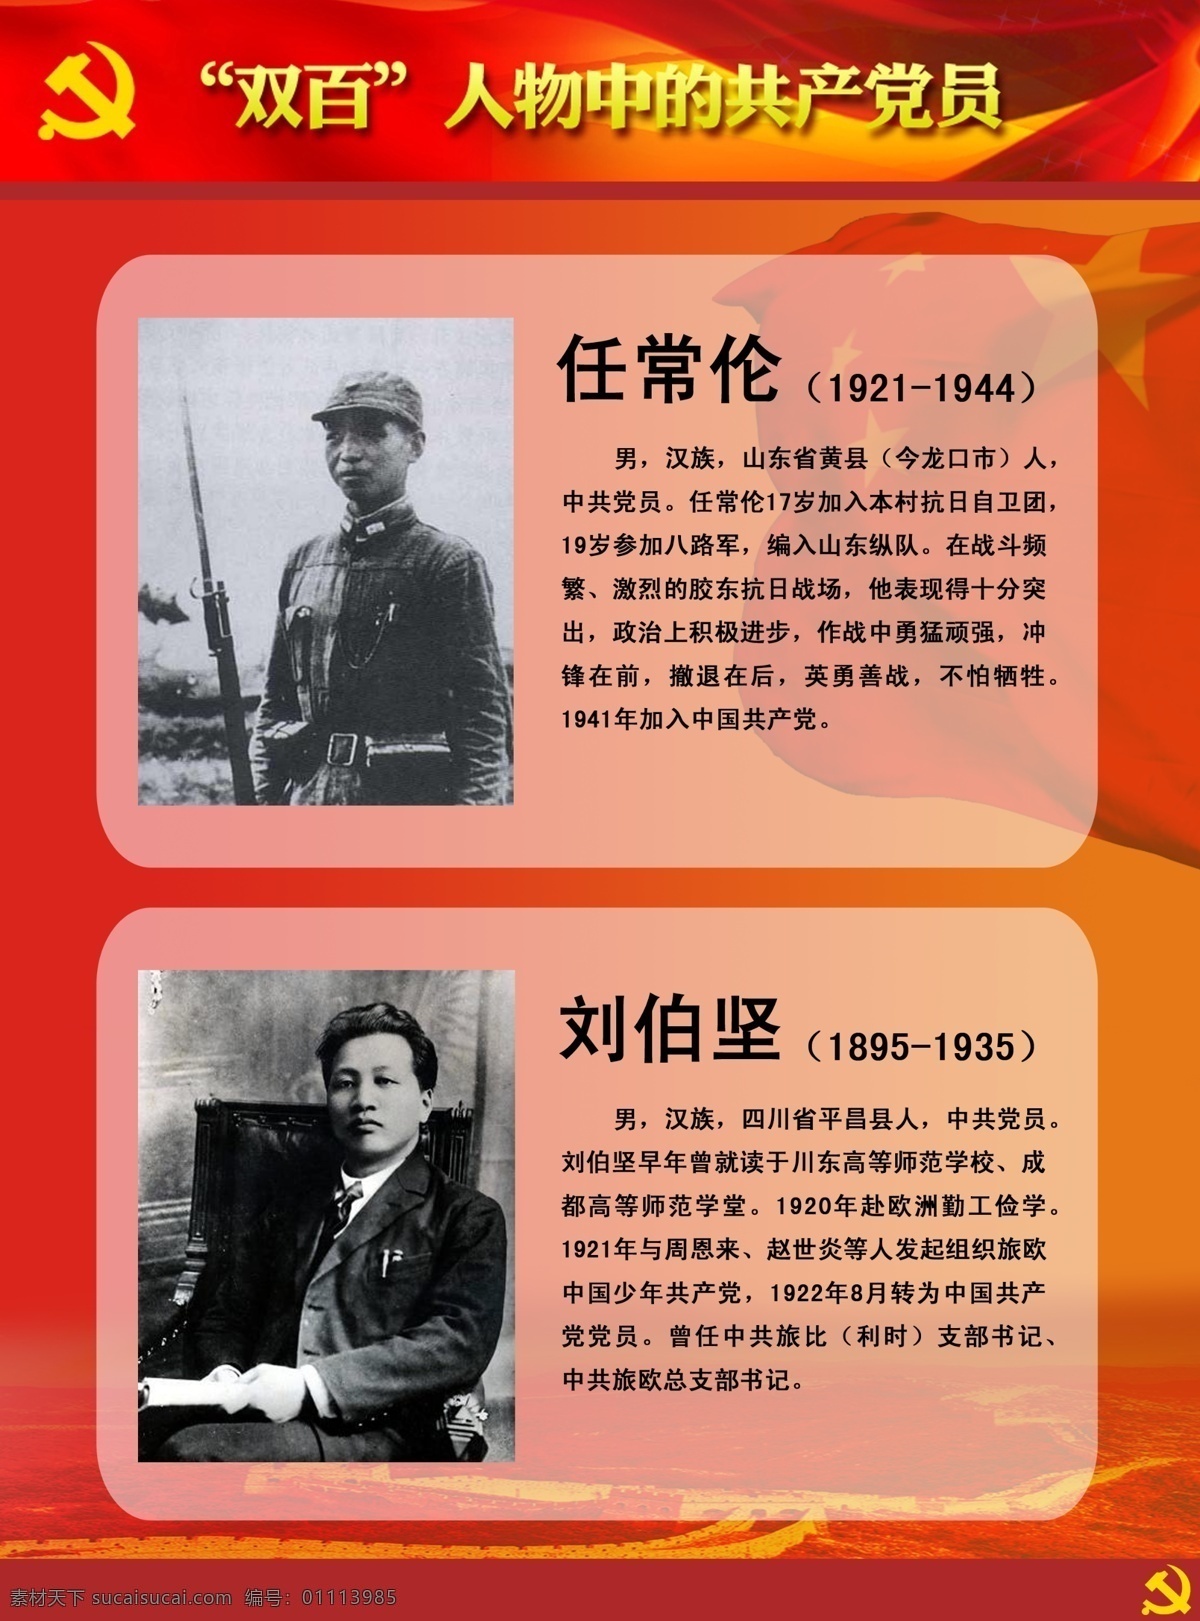 双百人物展板 双百 人物 中 共产党员 任常伦 刘伯坚 英雄人物 牺牲 英雄 展板模板 广告设计模板 源文件